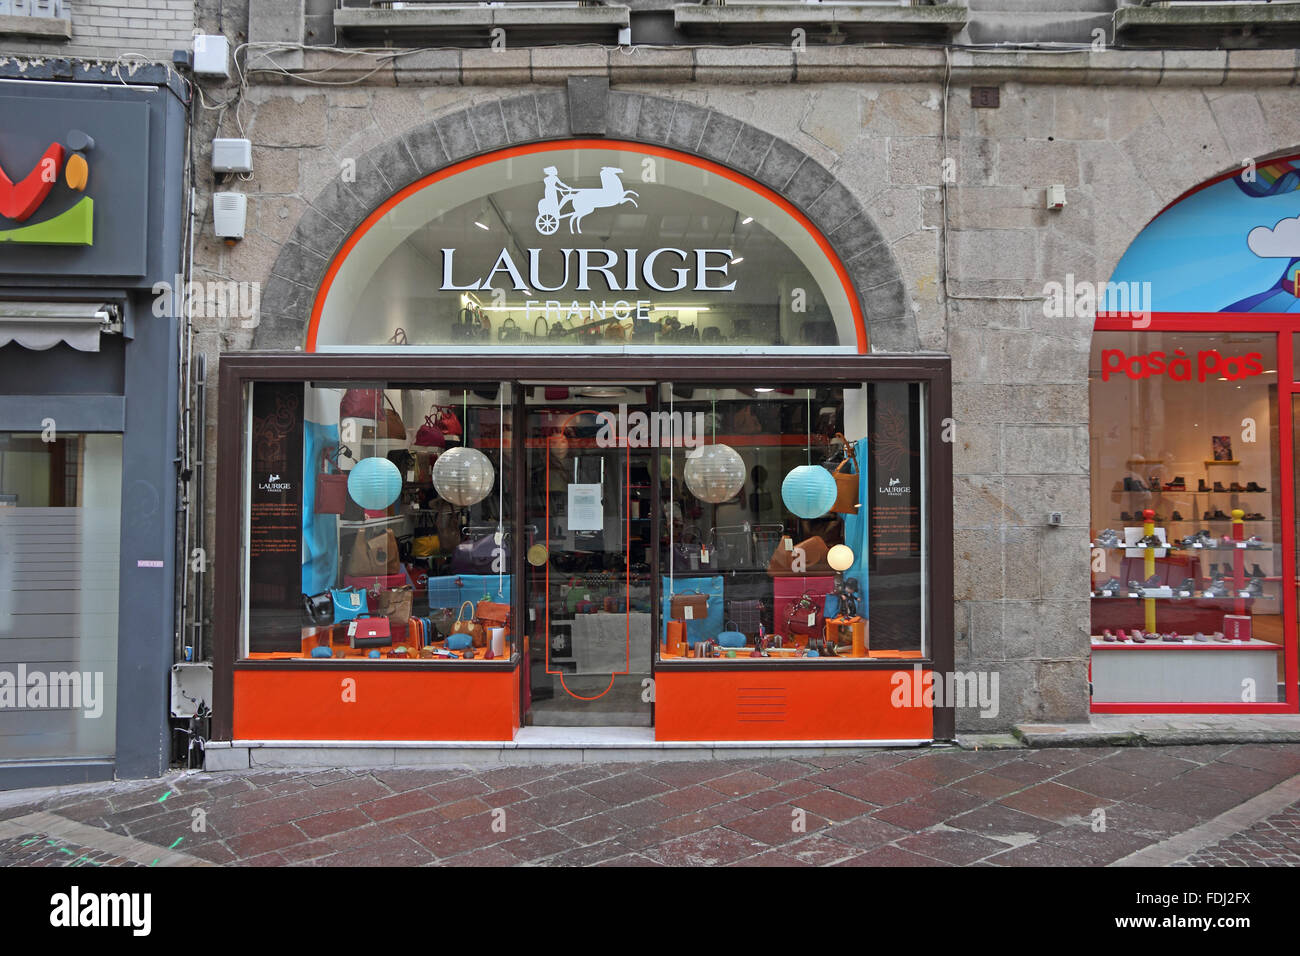 Laurige maroquinerie artisanale boutique, Limoges, France Banque D'Images